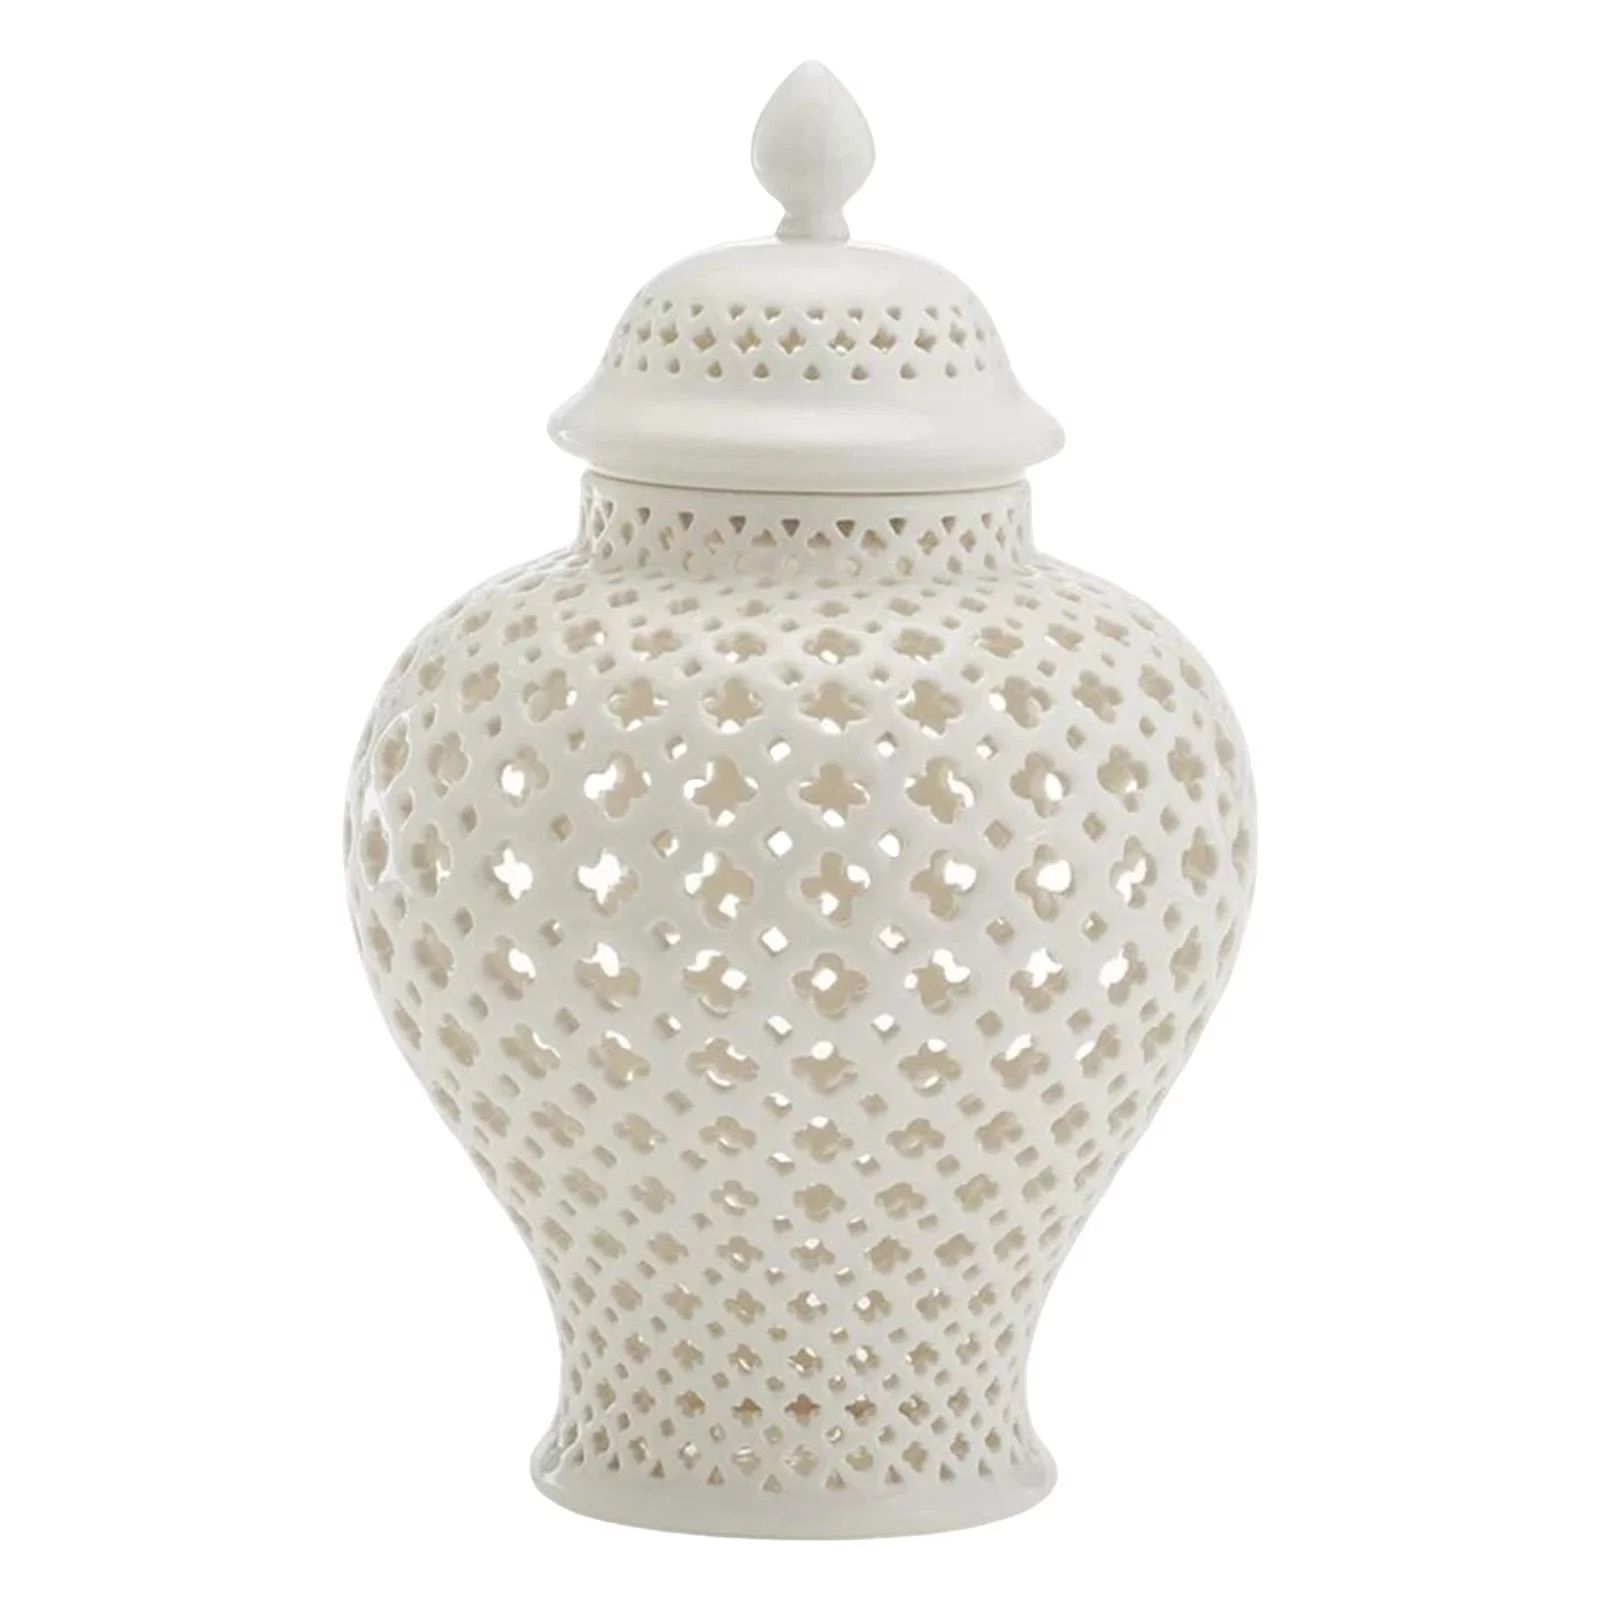 Large Ceramic Ginger Jar Vase Temple Jar Home Decoration with Lid Handicraft white - Walmart.com | Walmart (US)